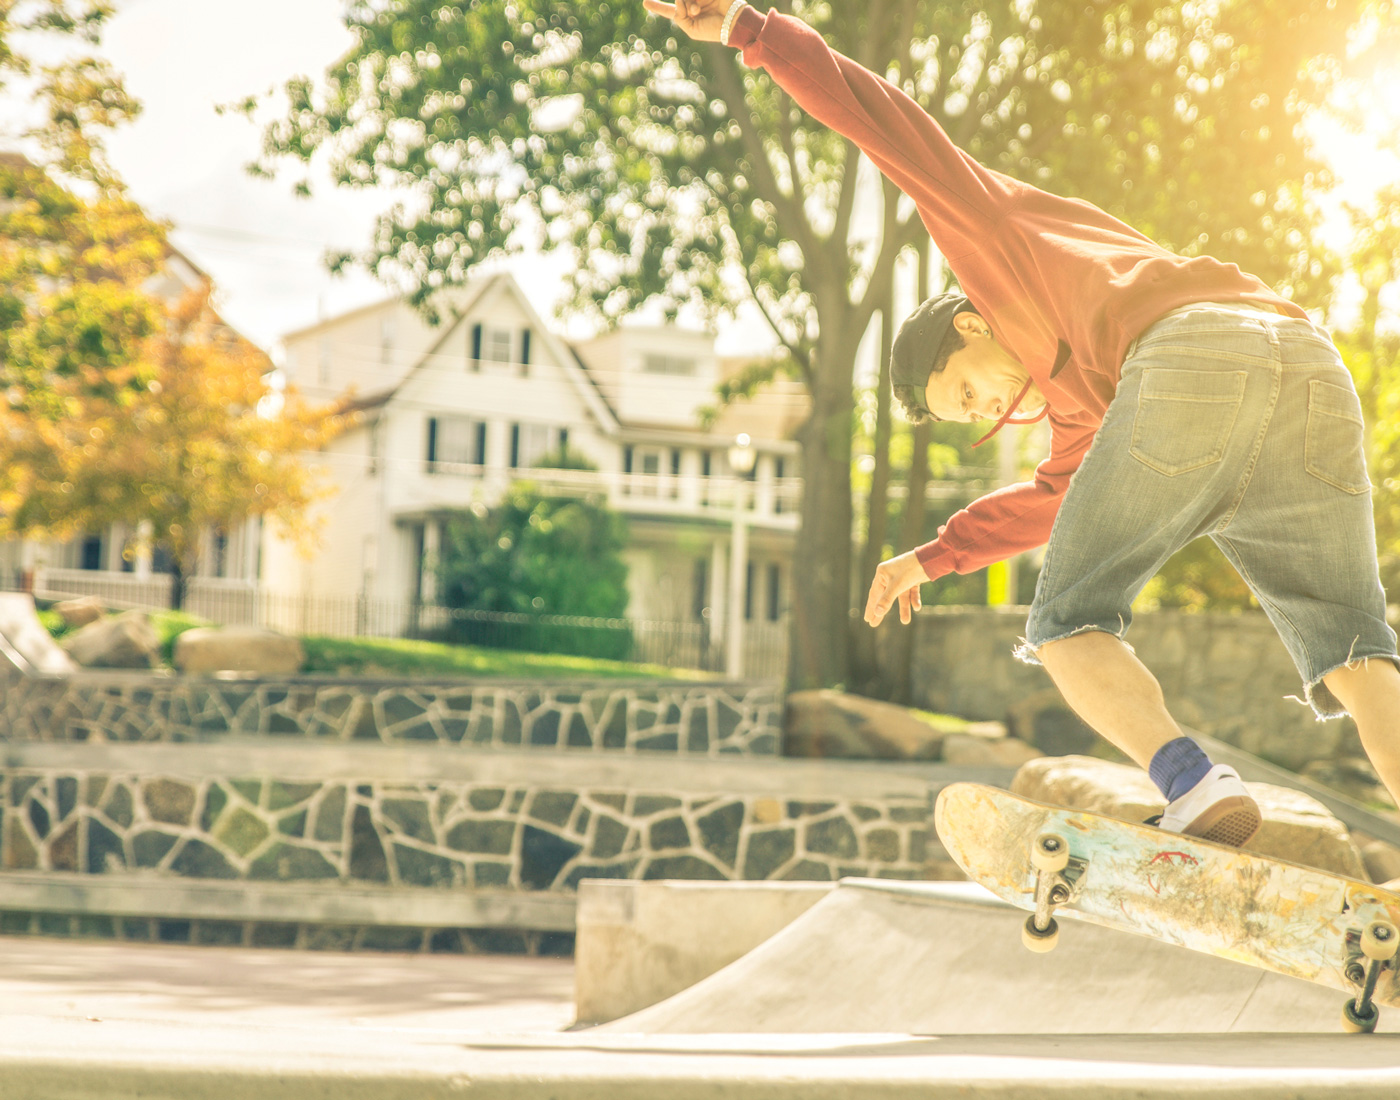 Nácvik nových triků na skateboardu se mnohdy neobejde bez spolehlivých náplastí za dobrou cenu